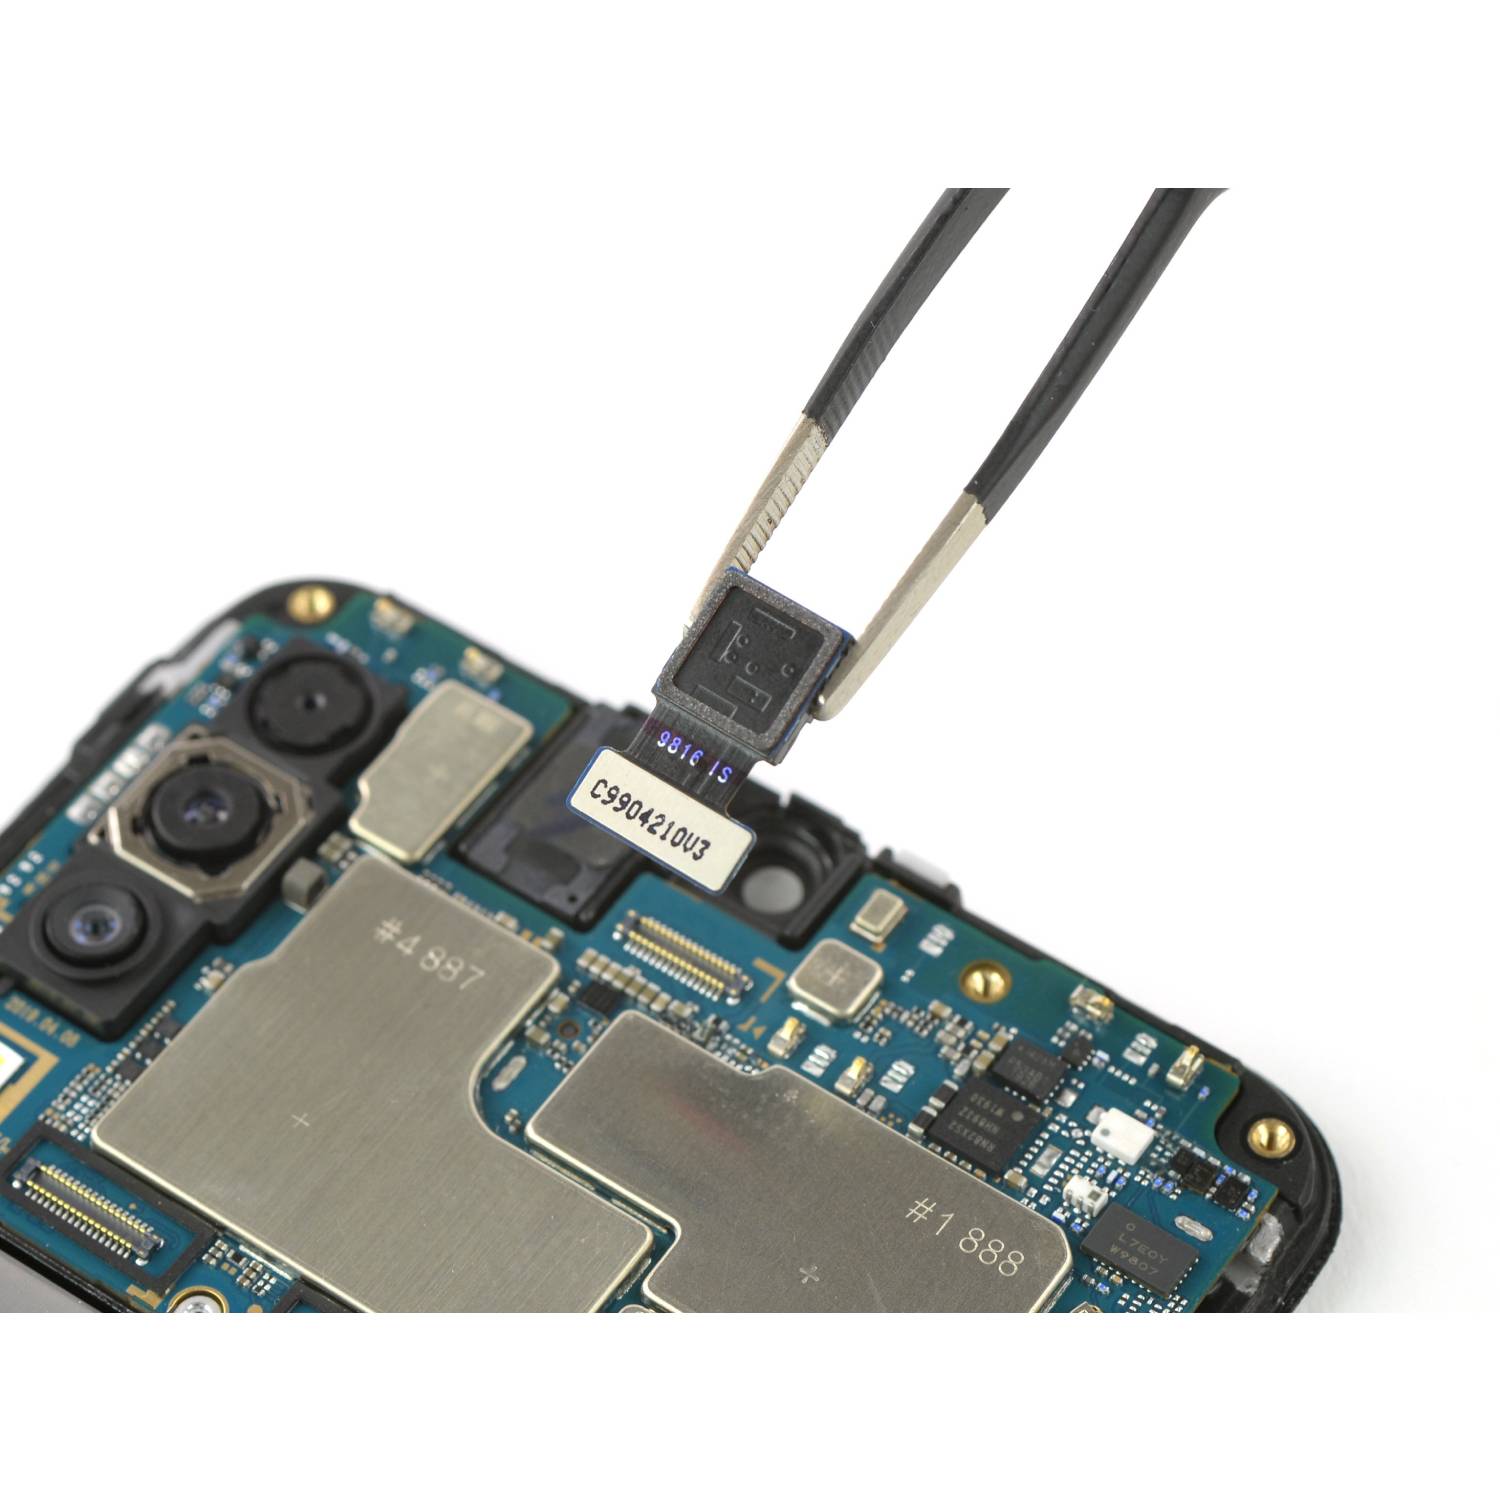 Samsung A50s (A507 _ 2019) repair